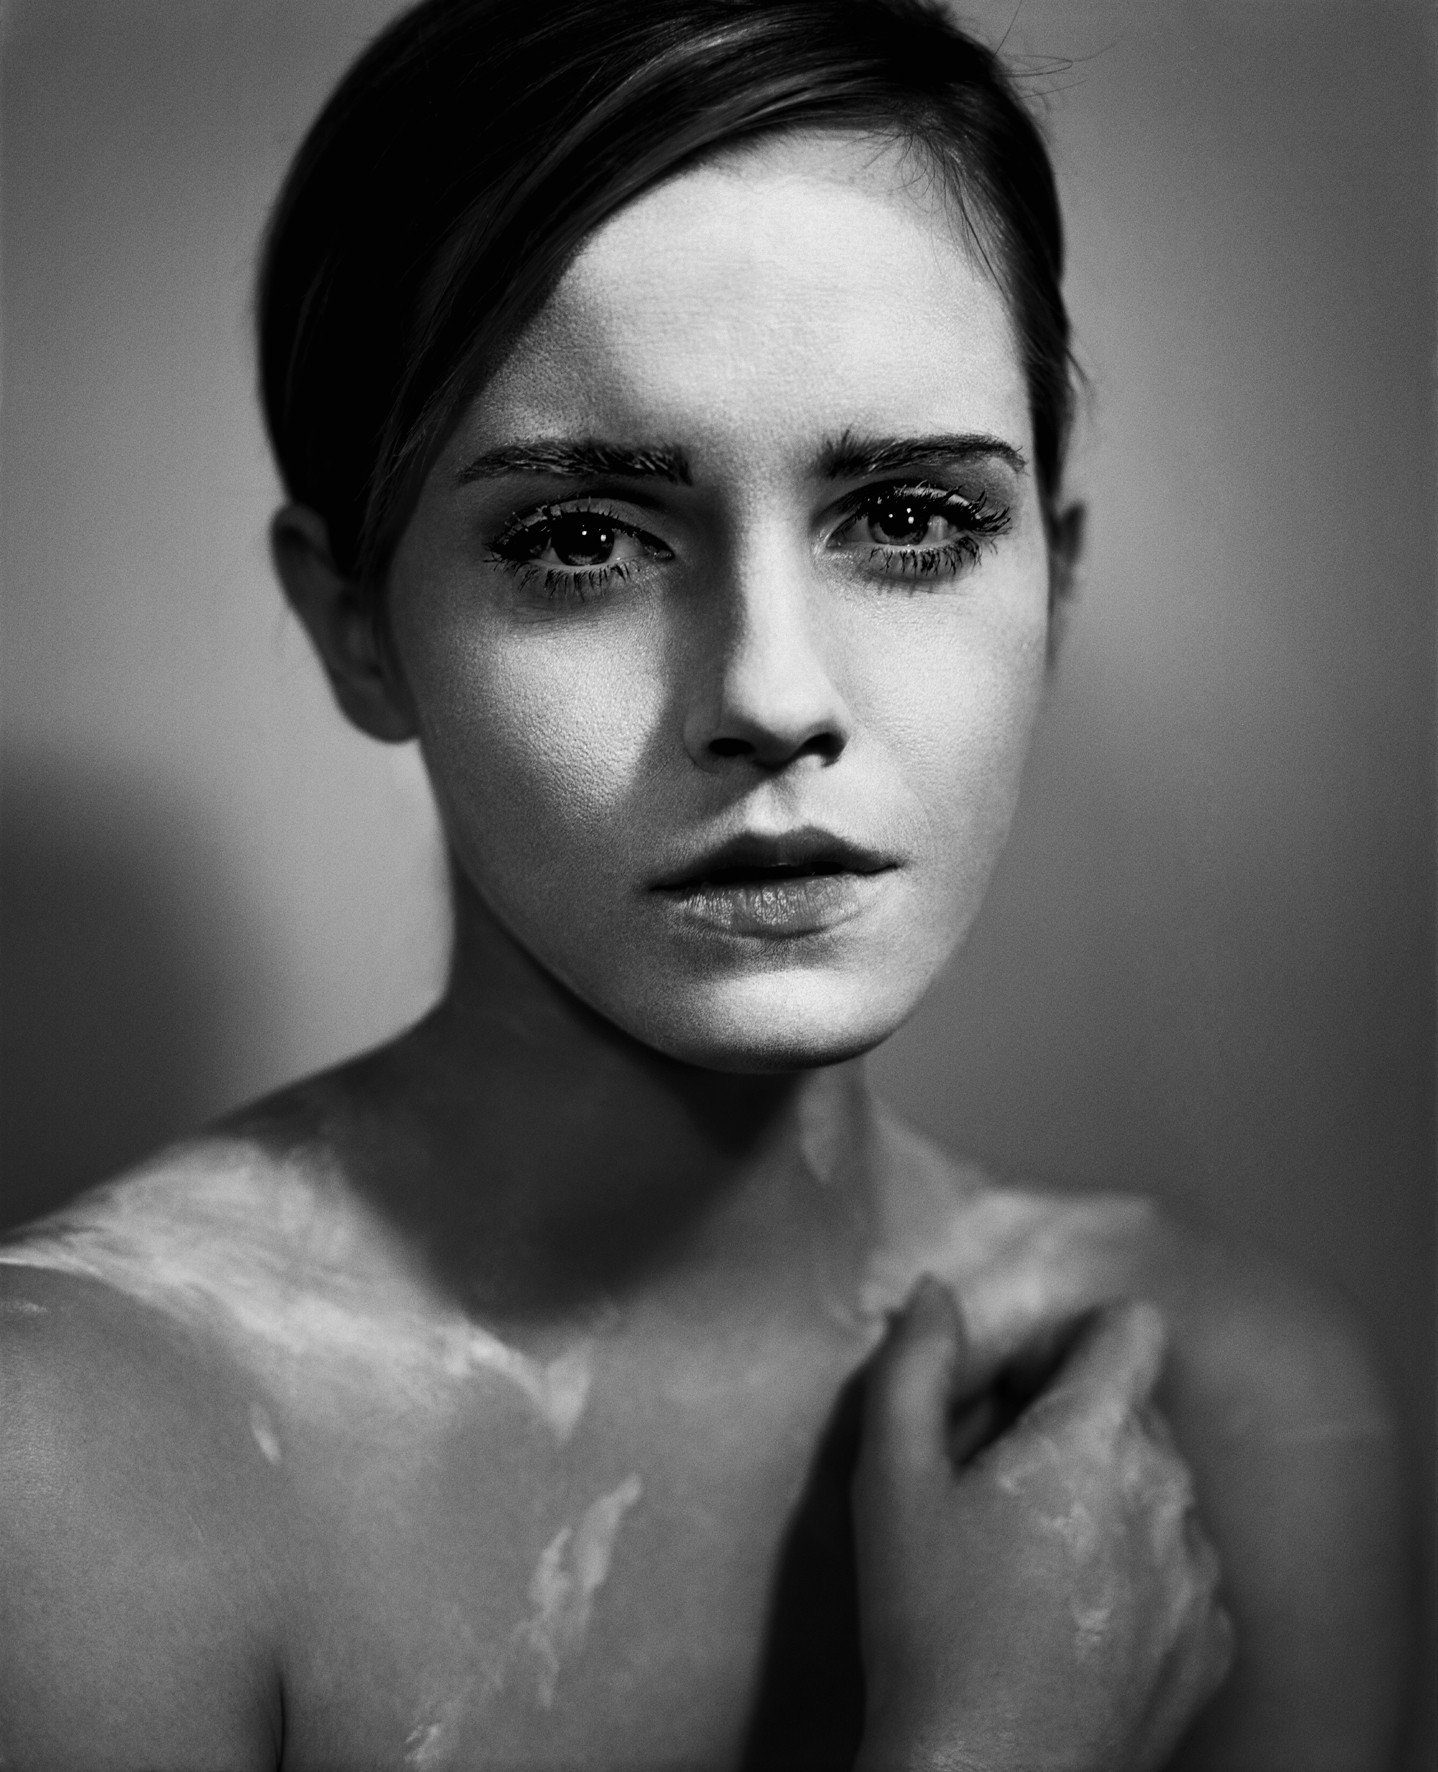 People 1438x1772 women actress brunette portrait portrait display face Vincent Peters sad Emma Watson monochrome British women